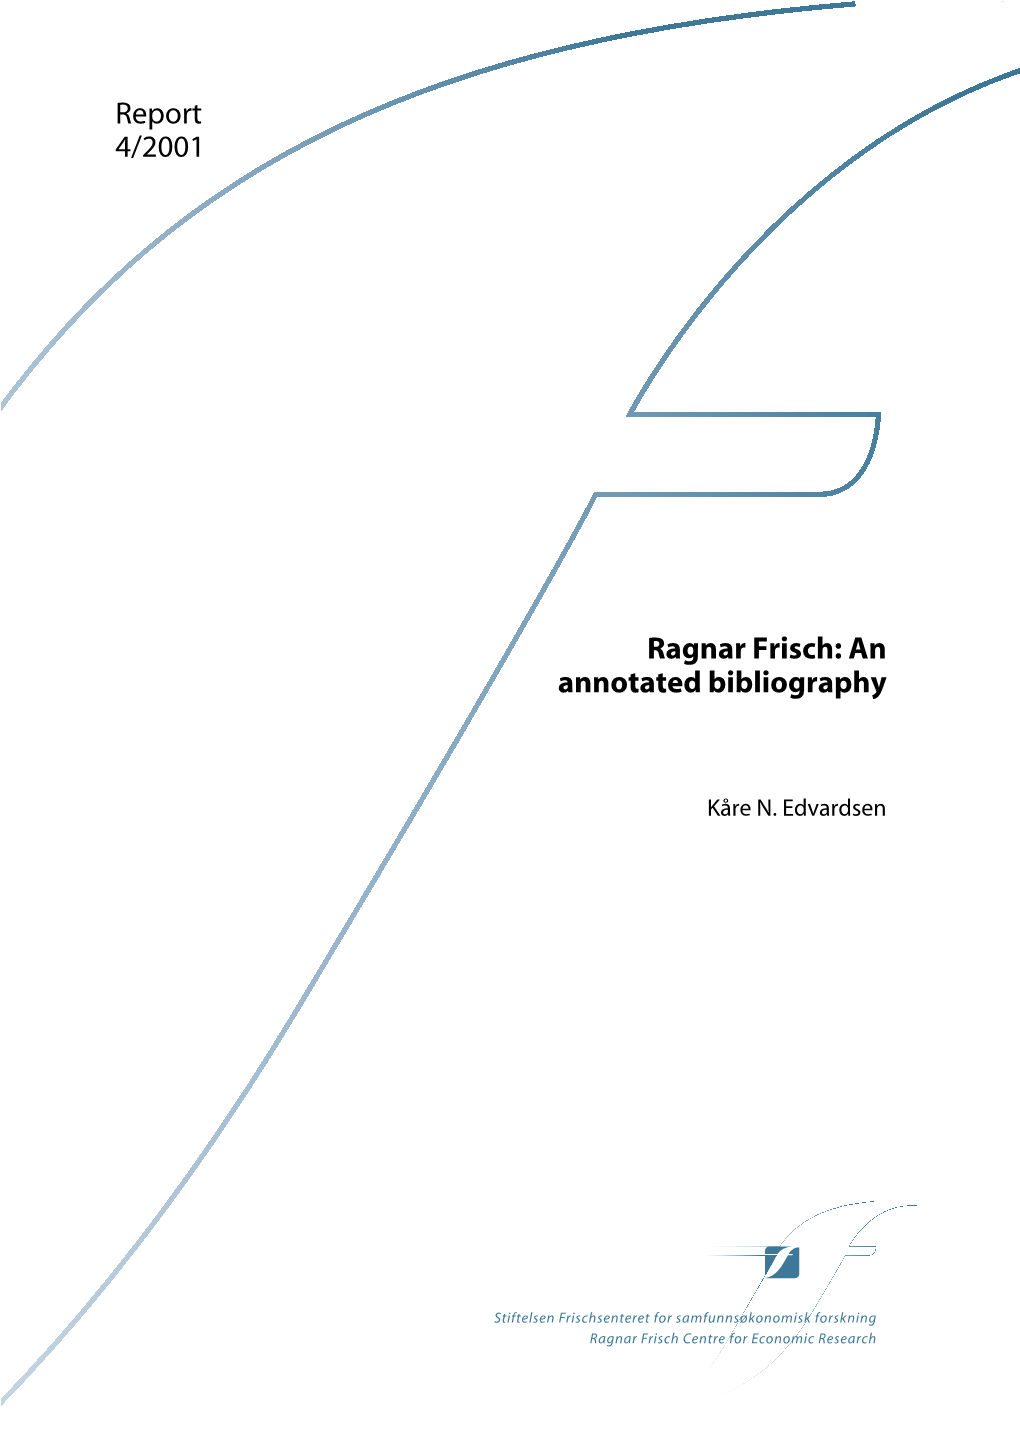 Report 4/2001 Ragnar Frisch: an Annotated Bibliography